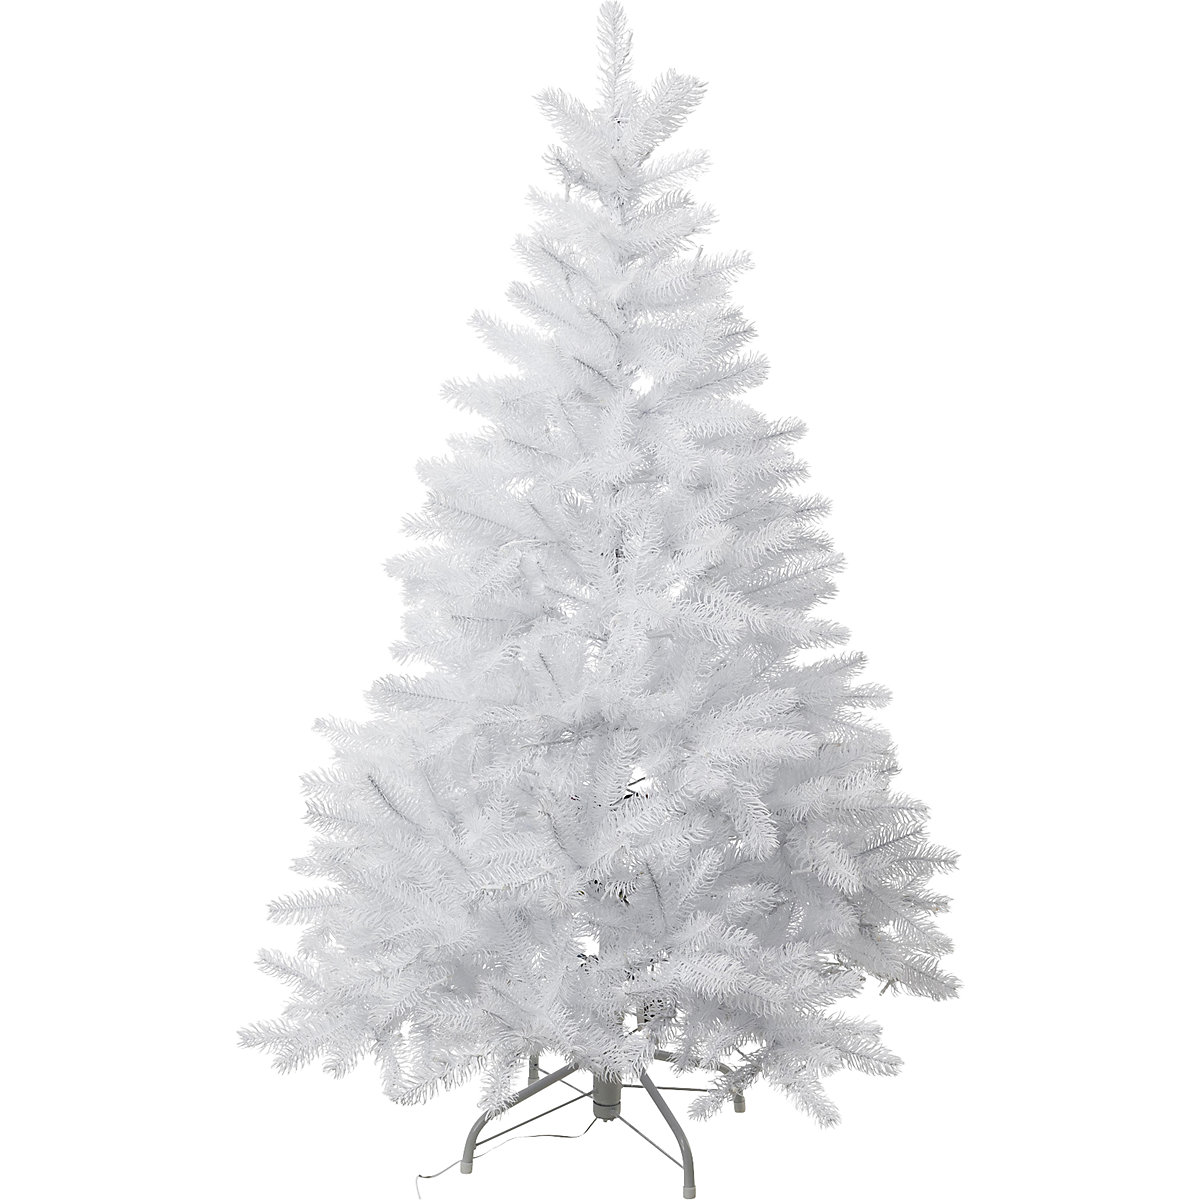 Artificial fir tree